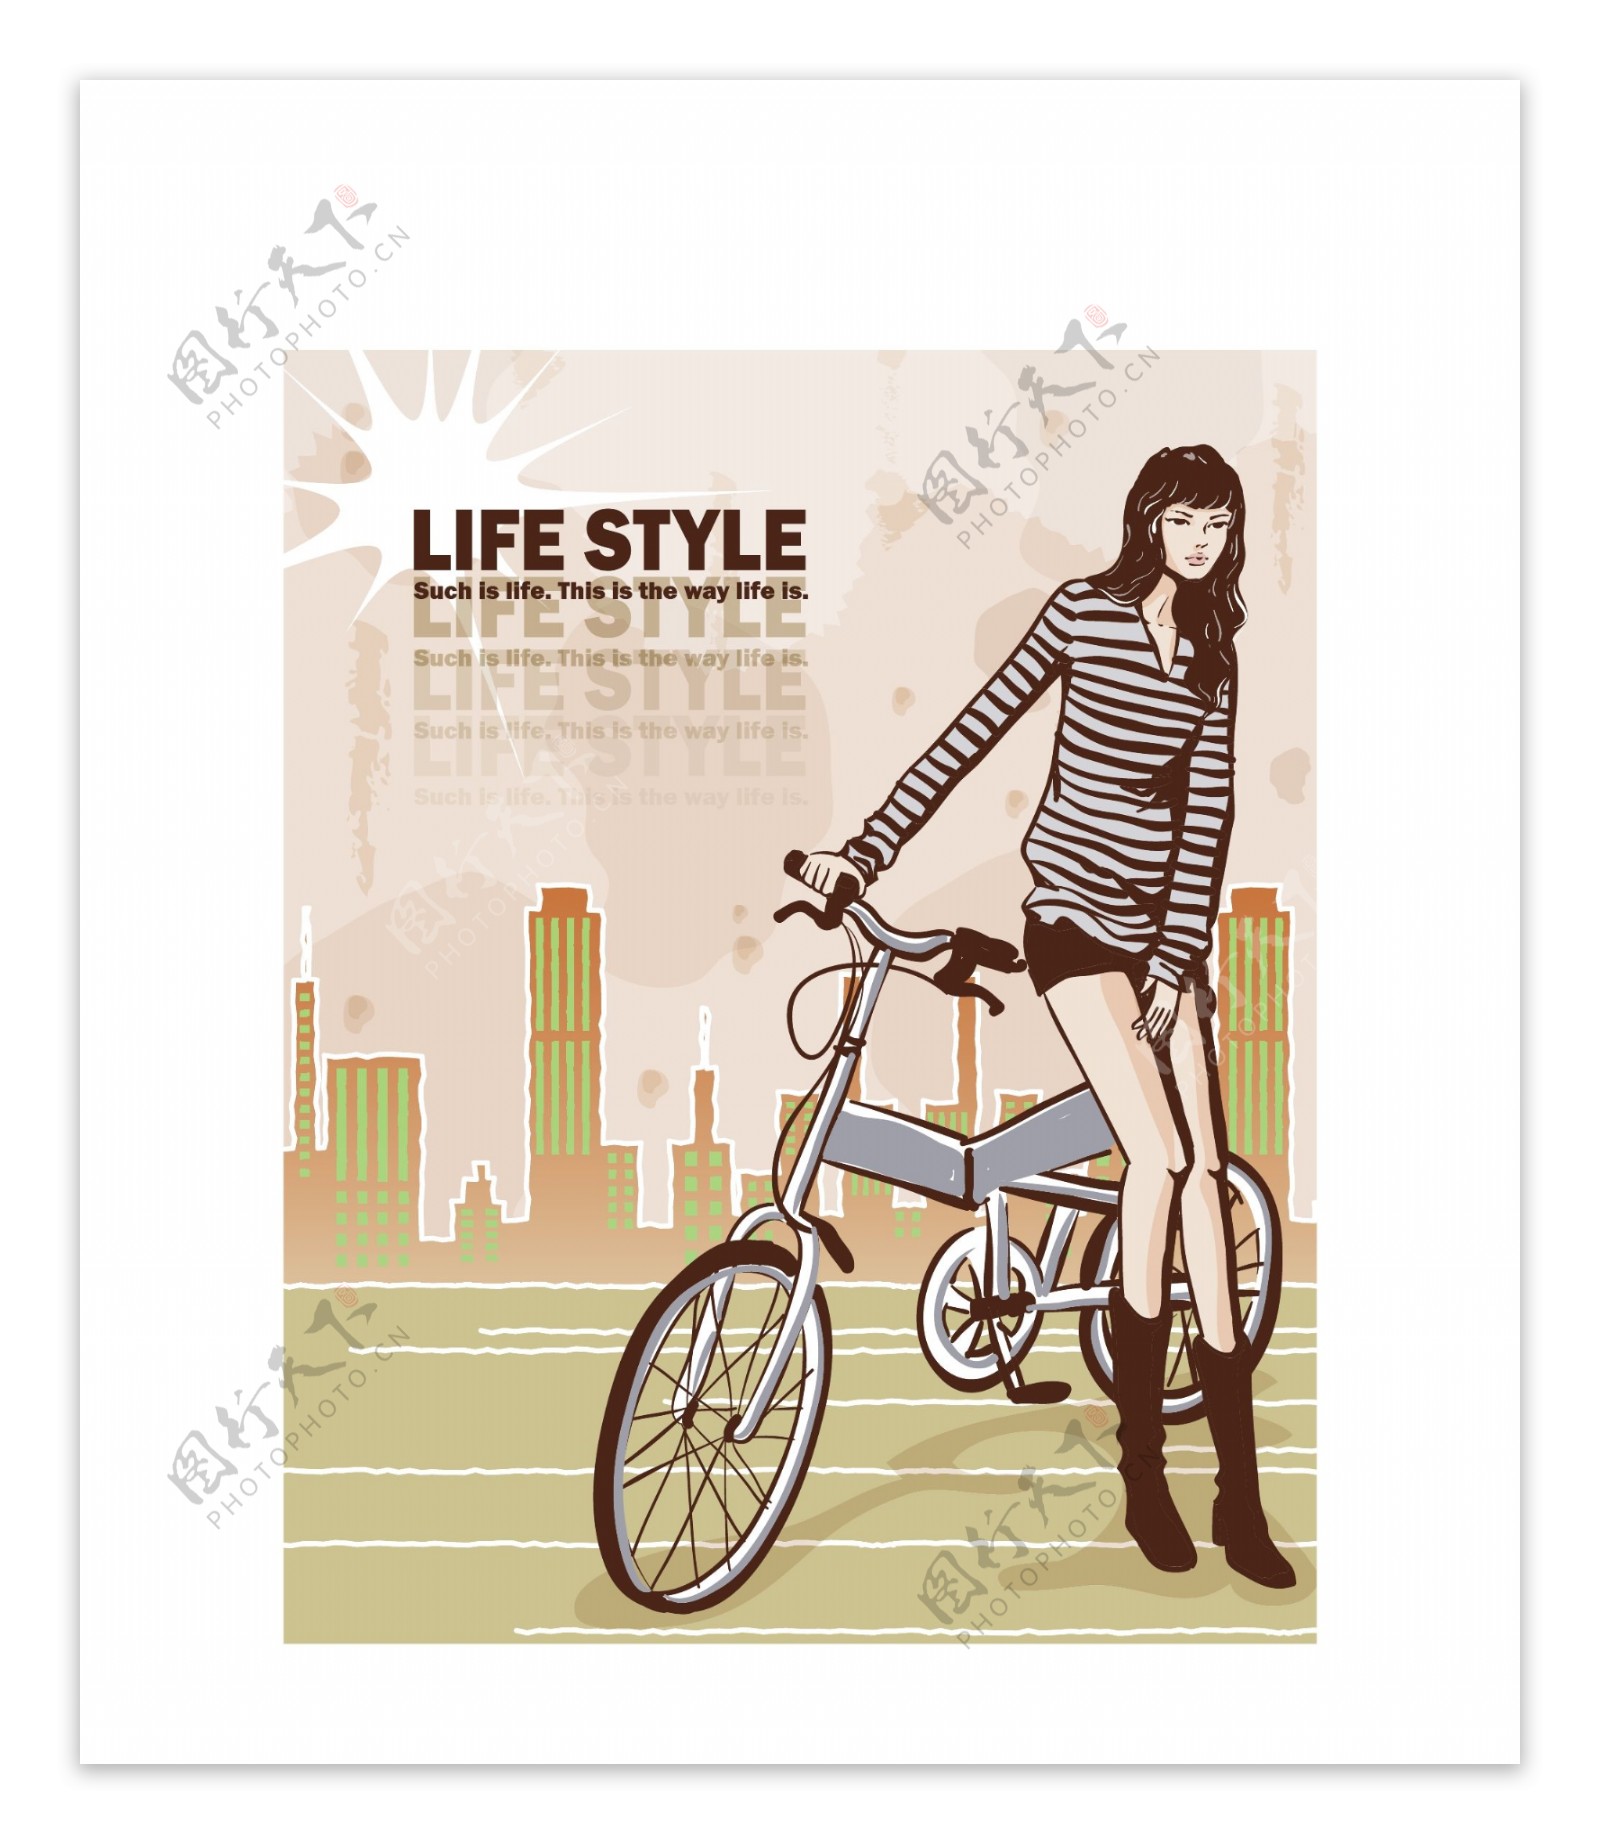 美女骑自行车图片